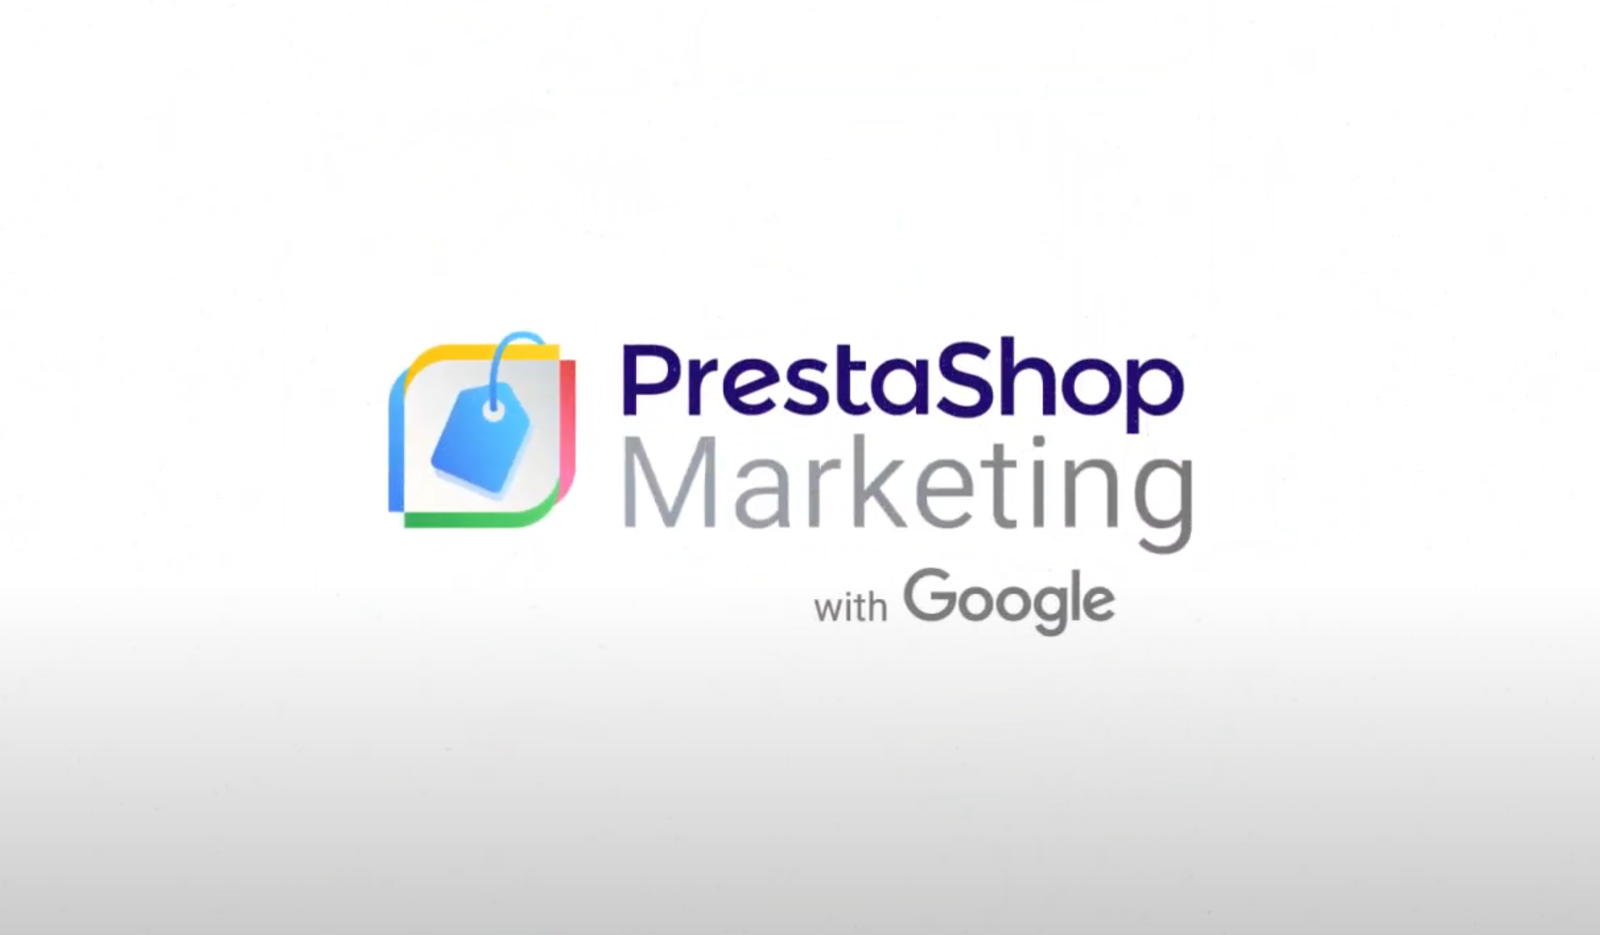 La plateforme PrestaShop signe un partenariat avec Google, une aubaine pour ses marchands